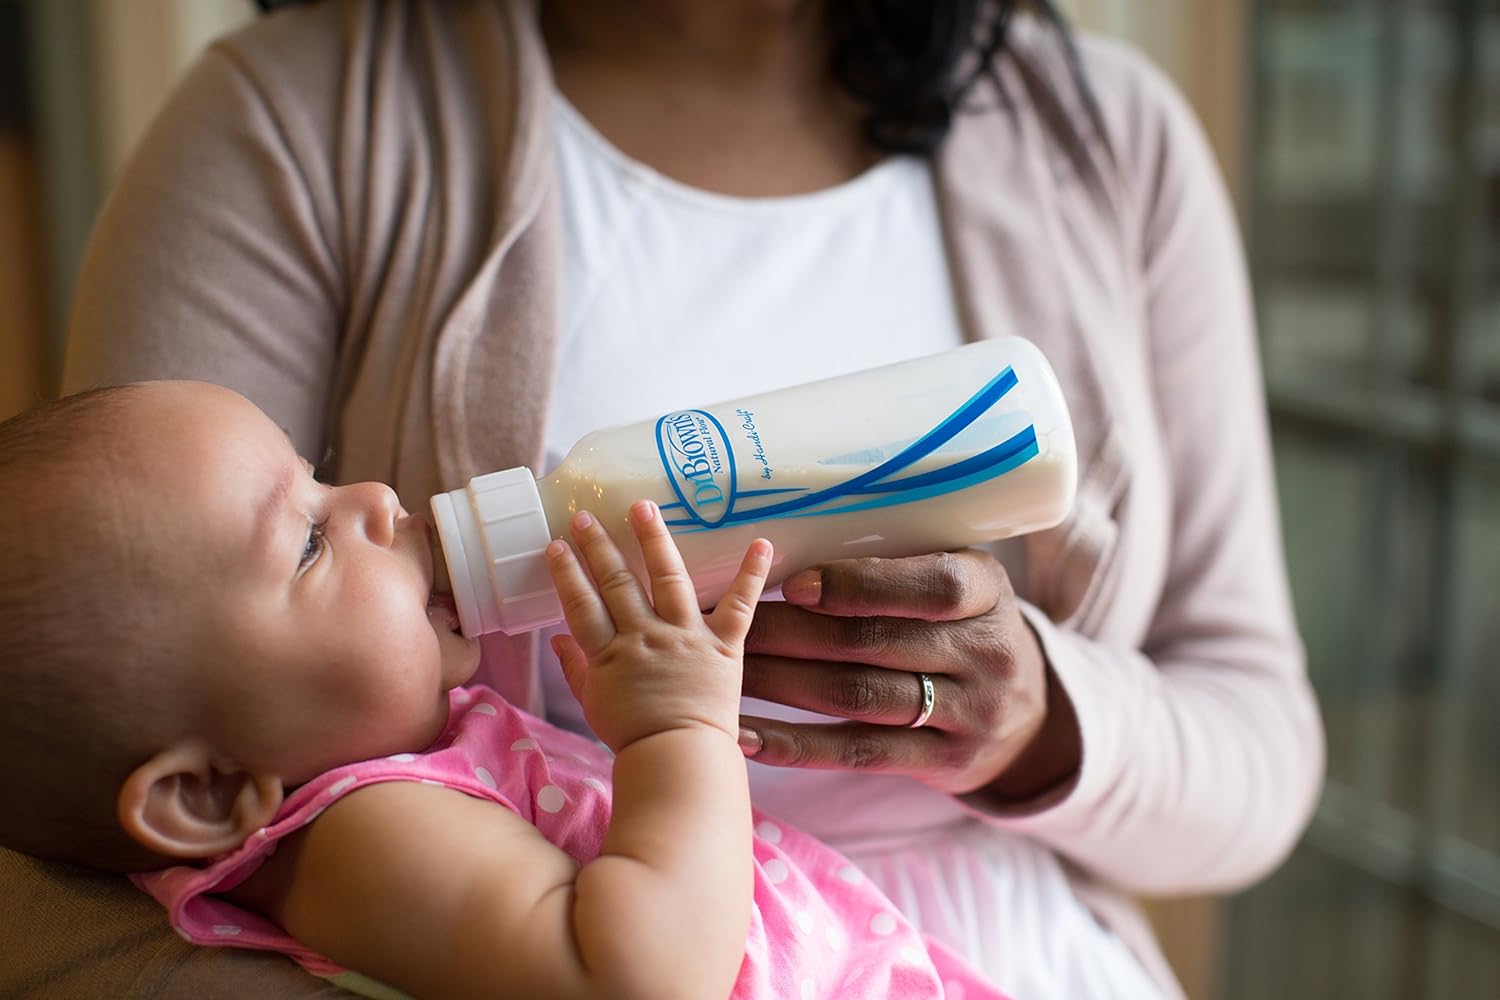 Как правильно кормить новорожденного из бутылочки смесью позы фото пошагово